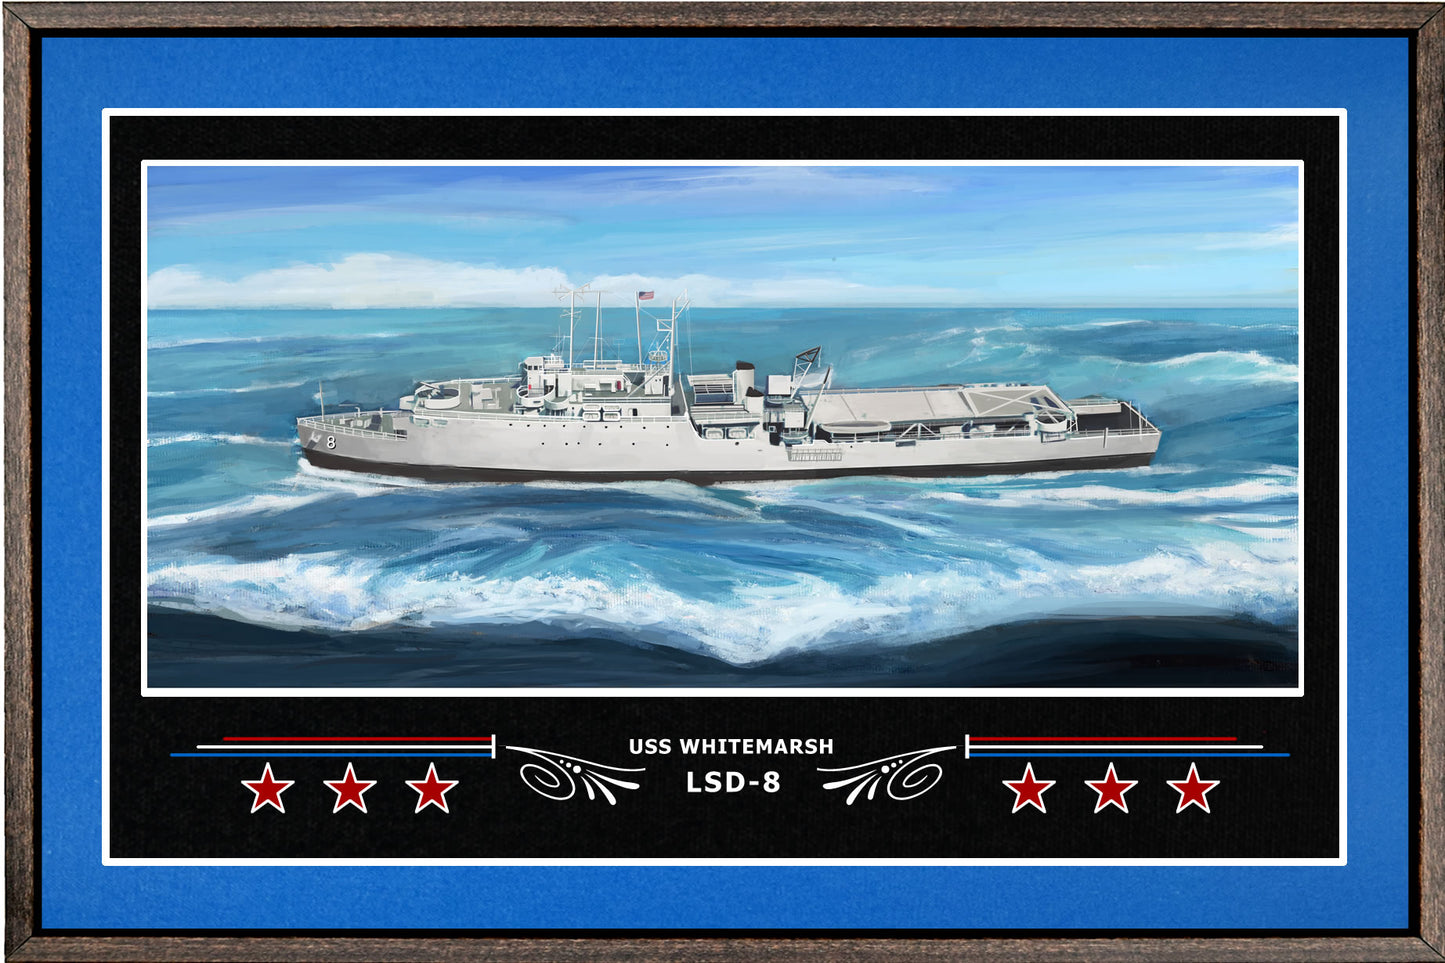 USS WHITEMARSH LSD 8 BOX FRAMED CANVAS ART BLUE